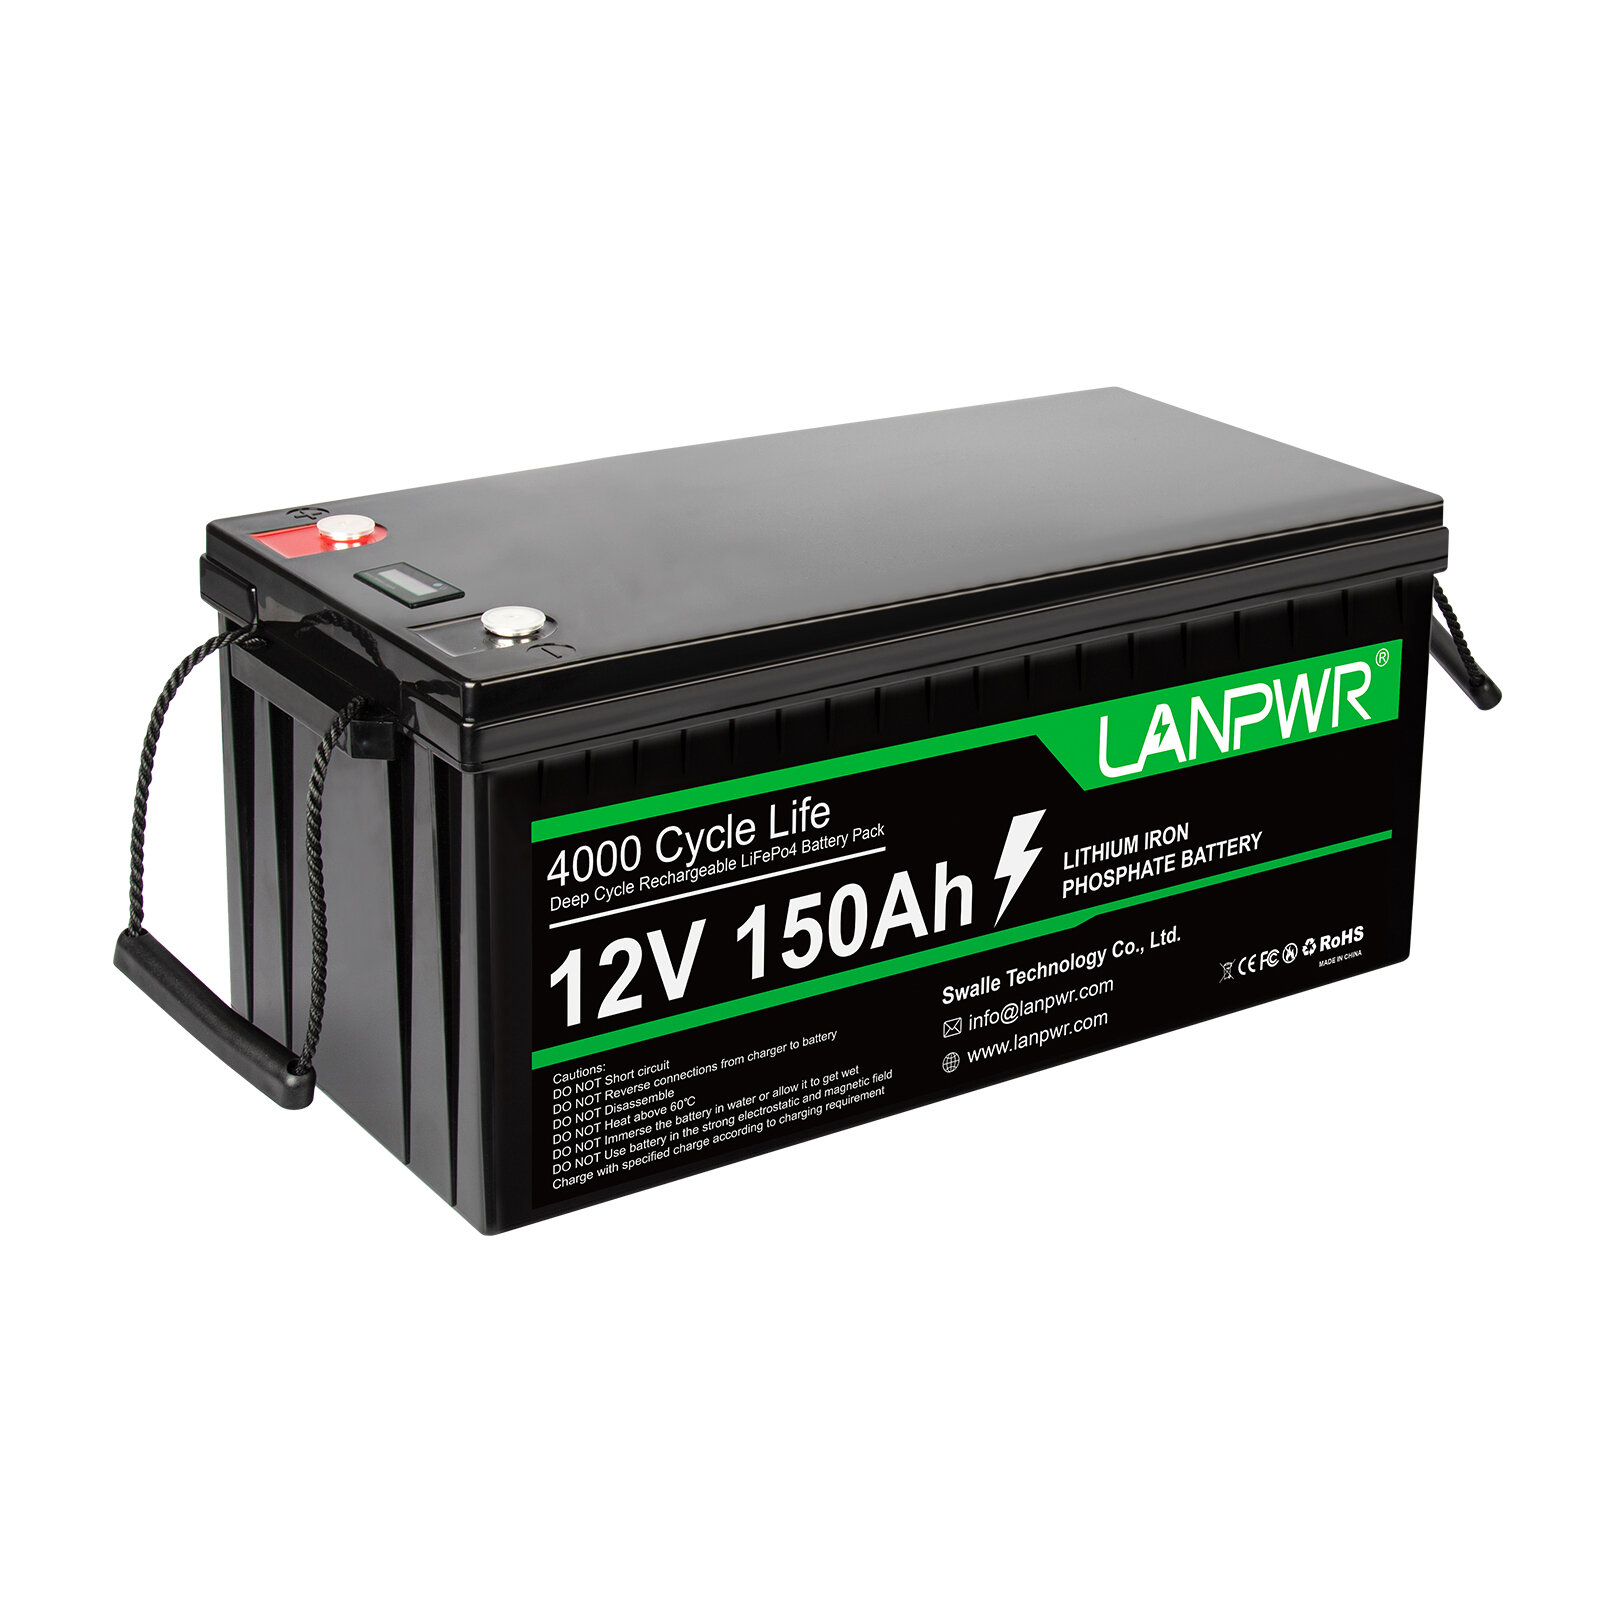 [EU Direct] LANPWR 12V 150Ah LiFePO4 Batarya Paketi, 1920Wh Lityum Batarya, Dahili 100A BMS ve IP65 Su Geçirmezlik Sınıfı ile Yedek Güç Ev Enerjisi Depolama ve Off-Grid'in Çoğunu Değiştirmek İçin.